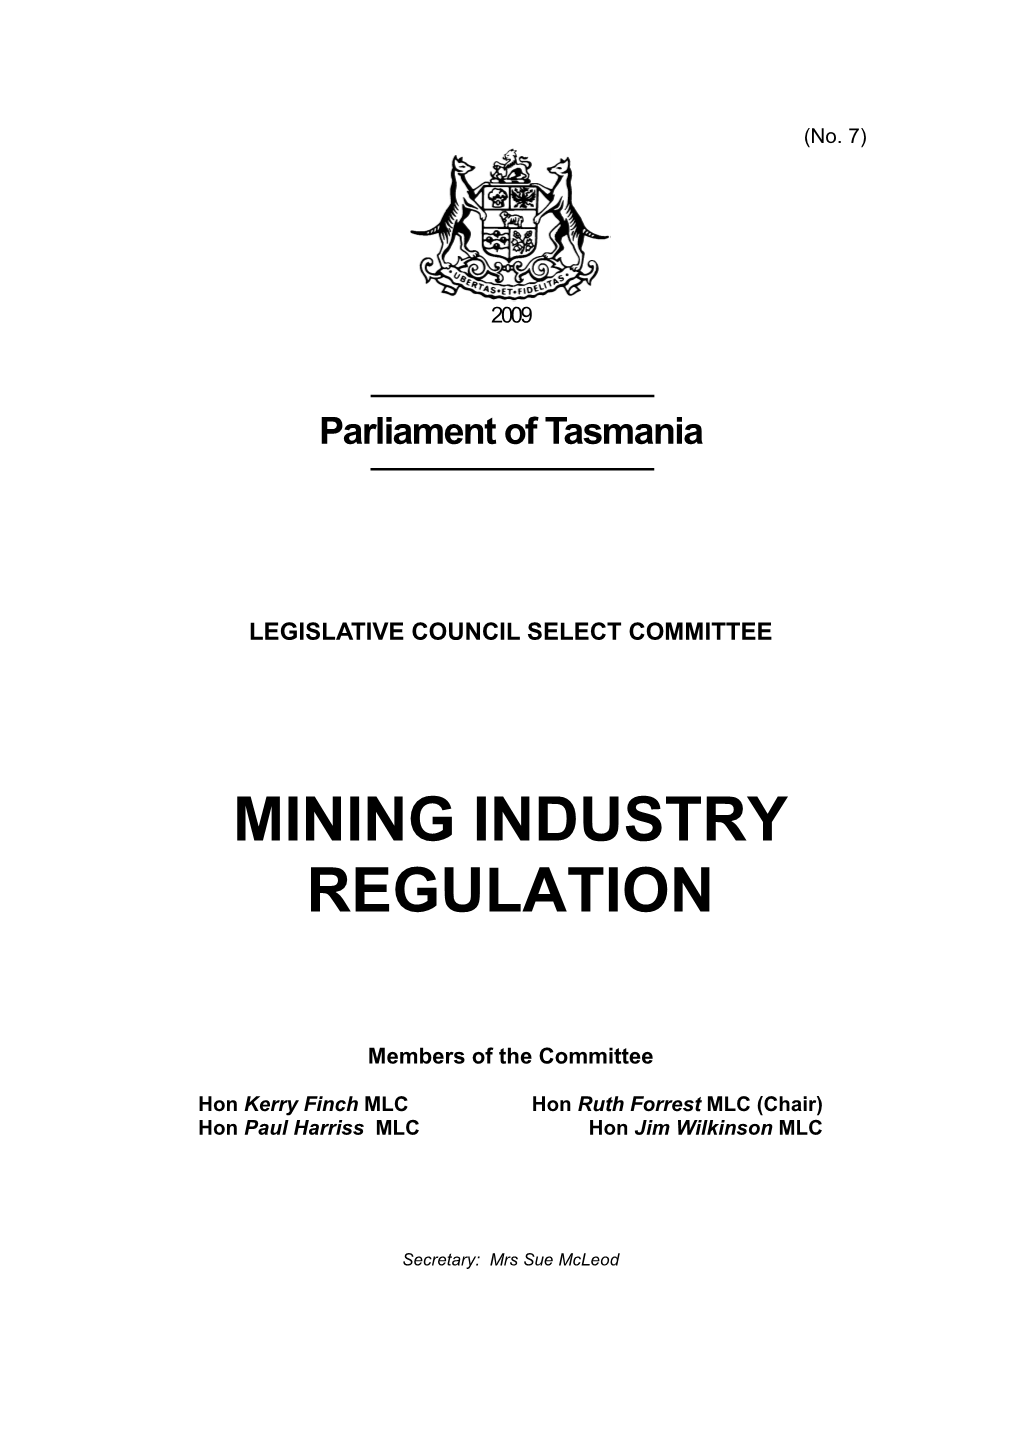 Mining Industry Regulation